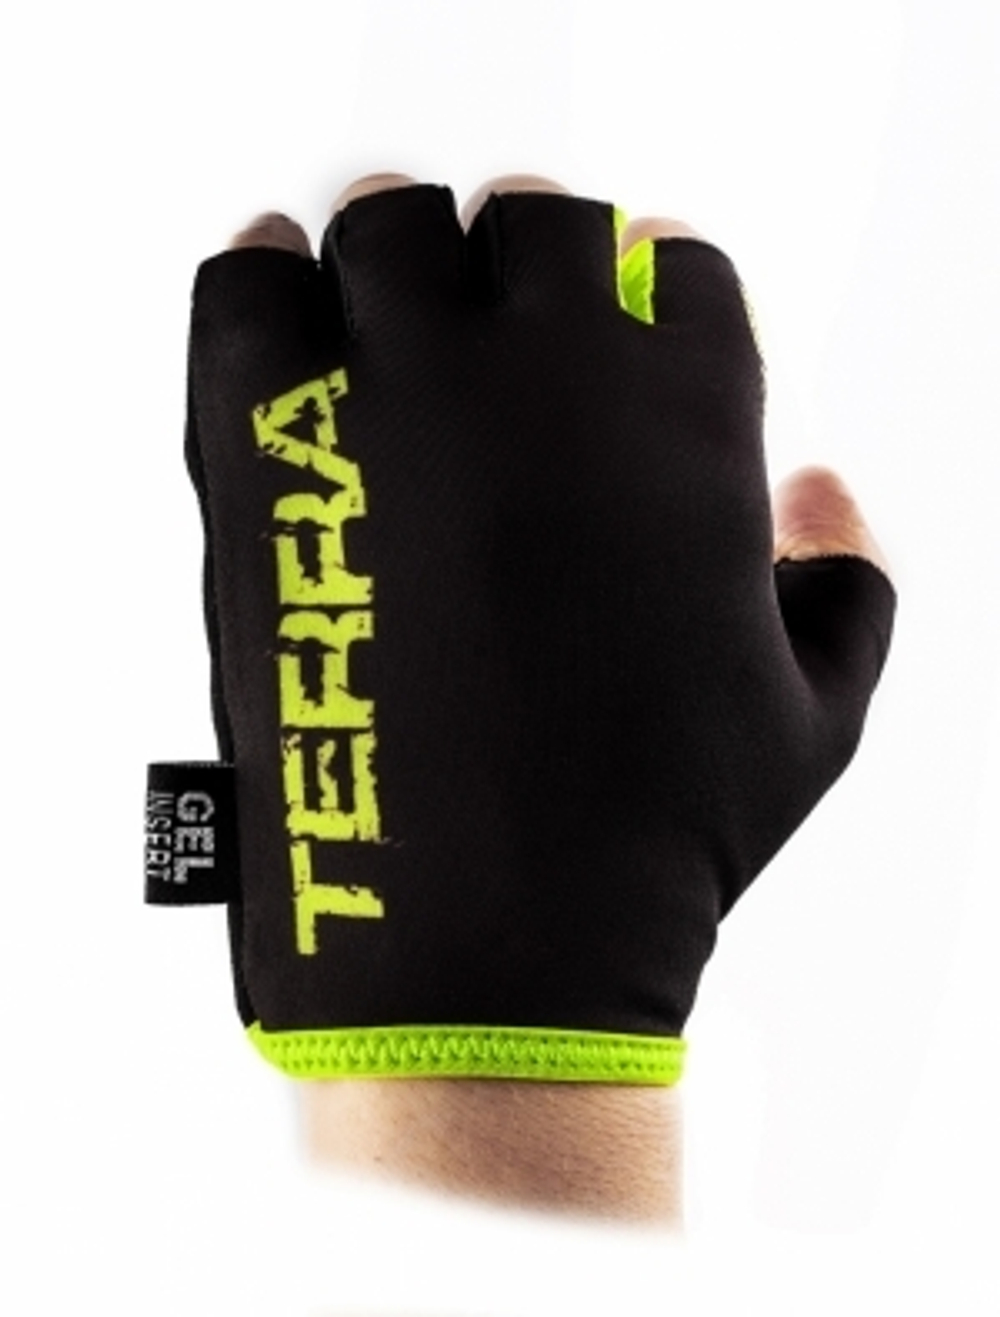 Перчатки велосипедные, NEW TERRA, черные с зеленым, размер M VG 837 New Terra (M)